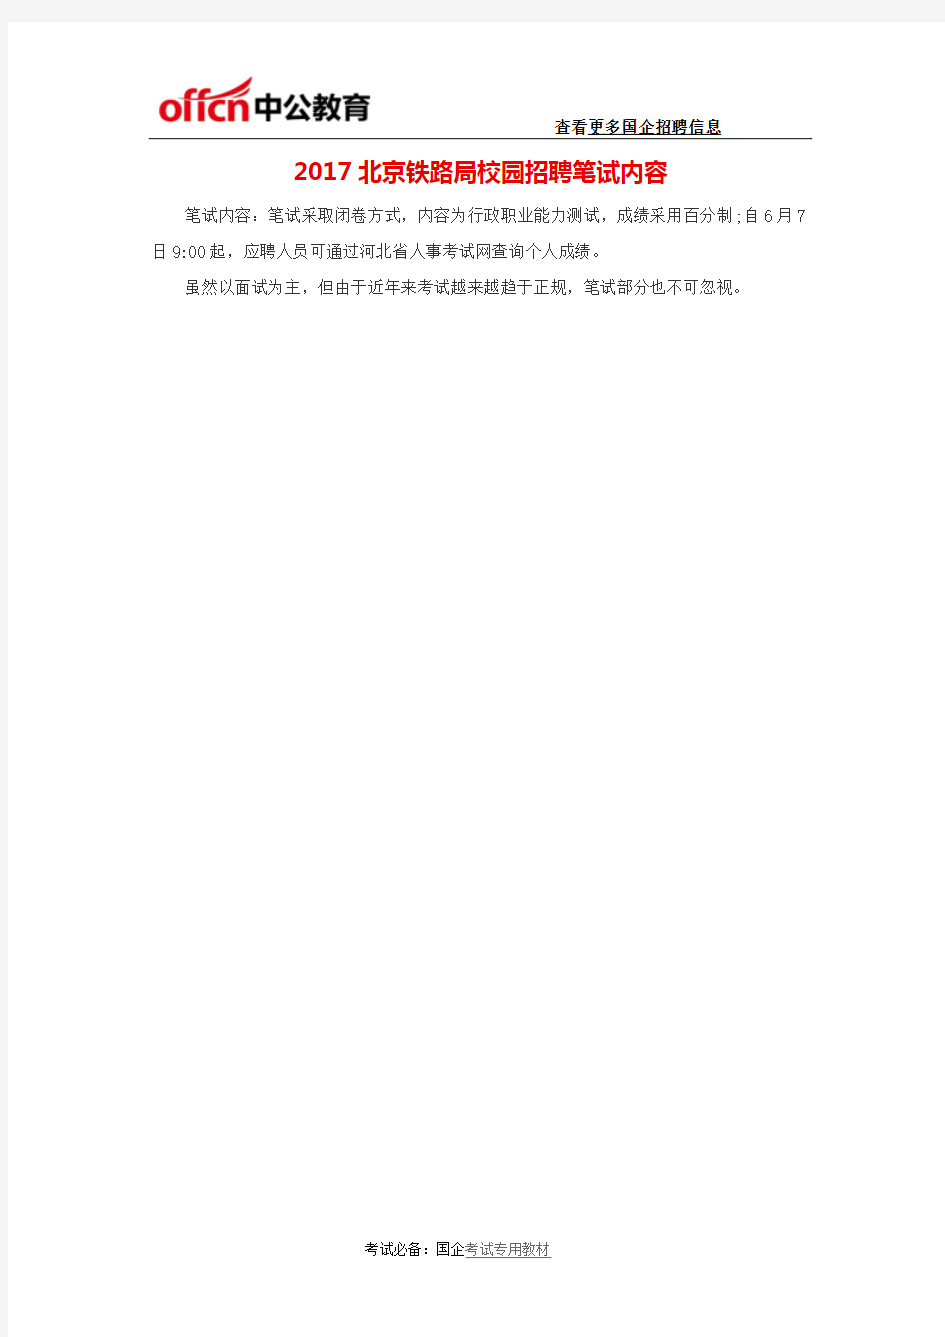 2017北京铁路局校园招聘笔试内容